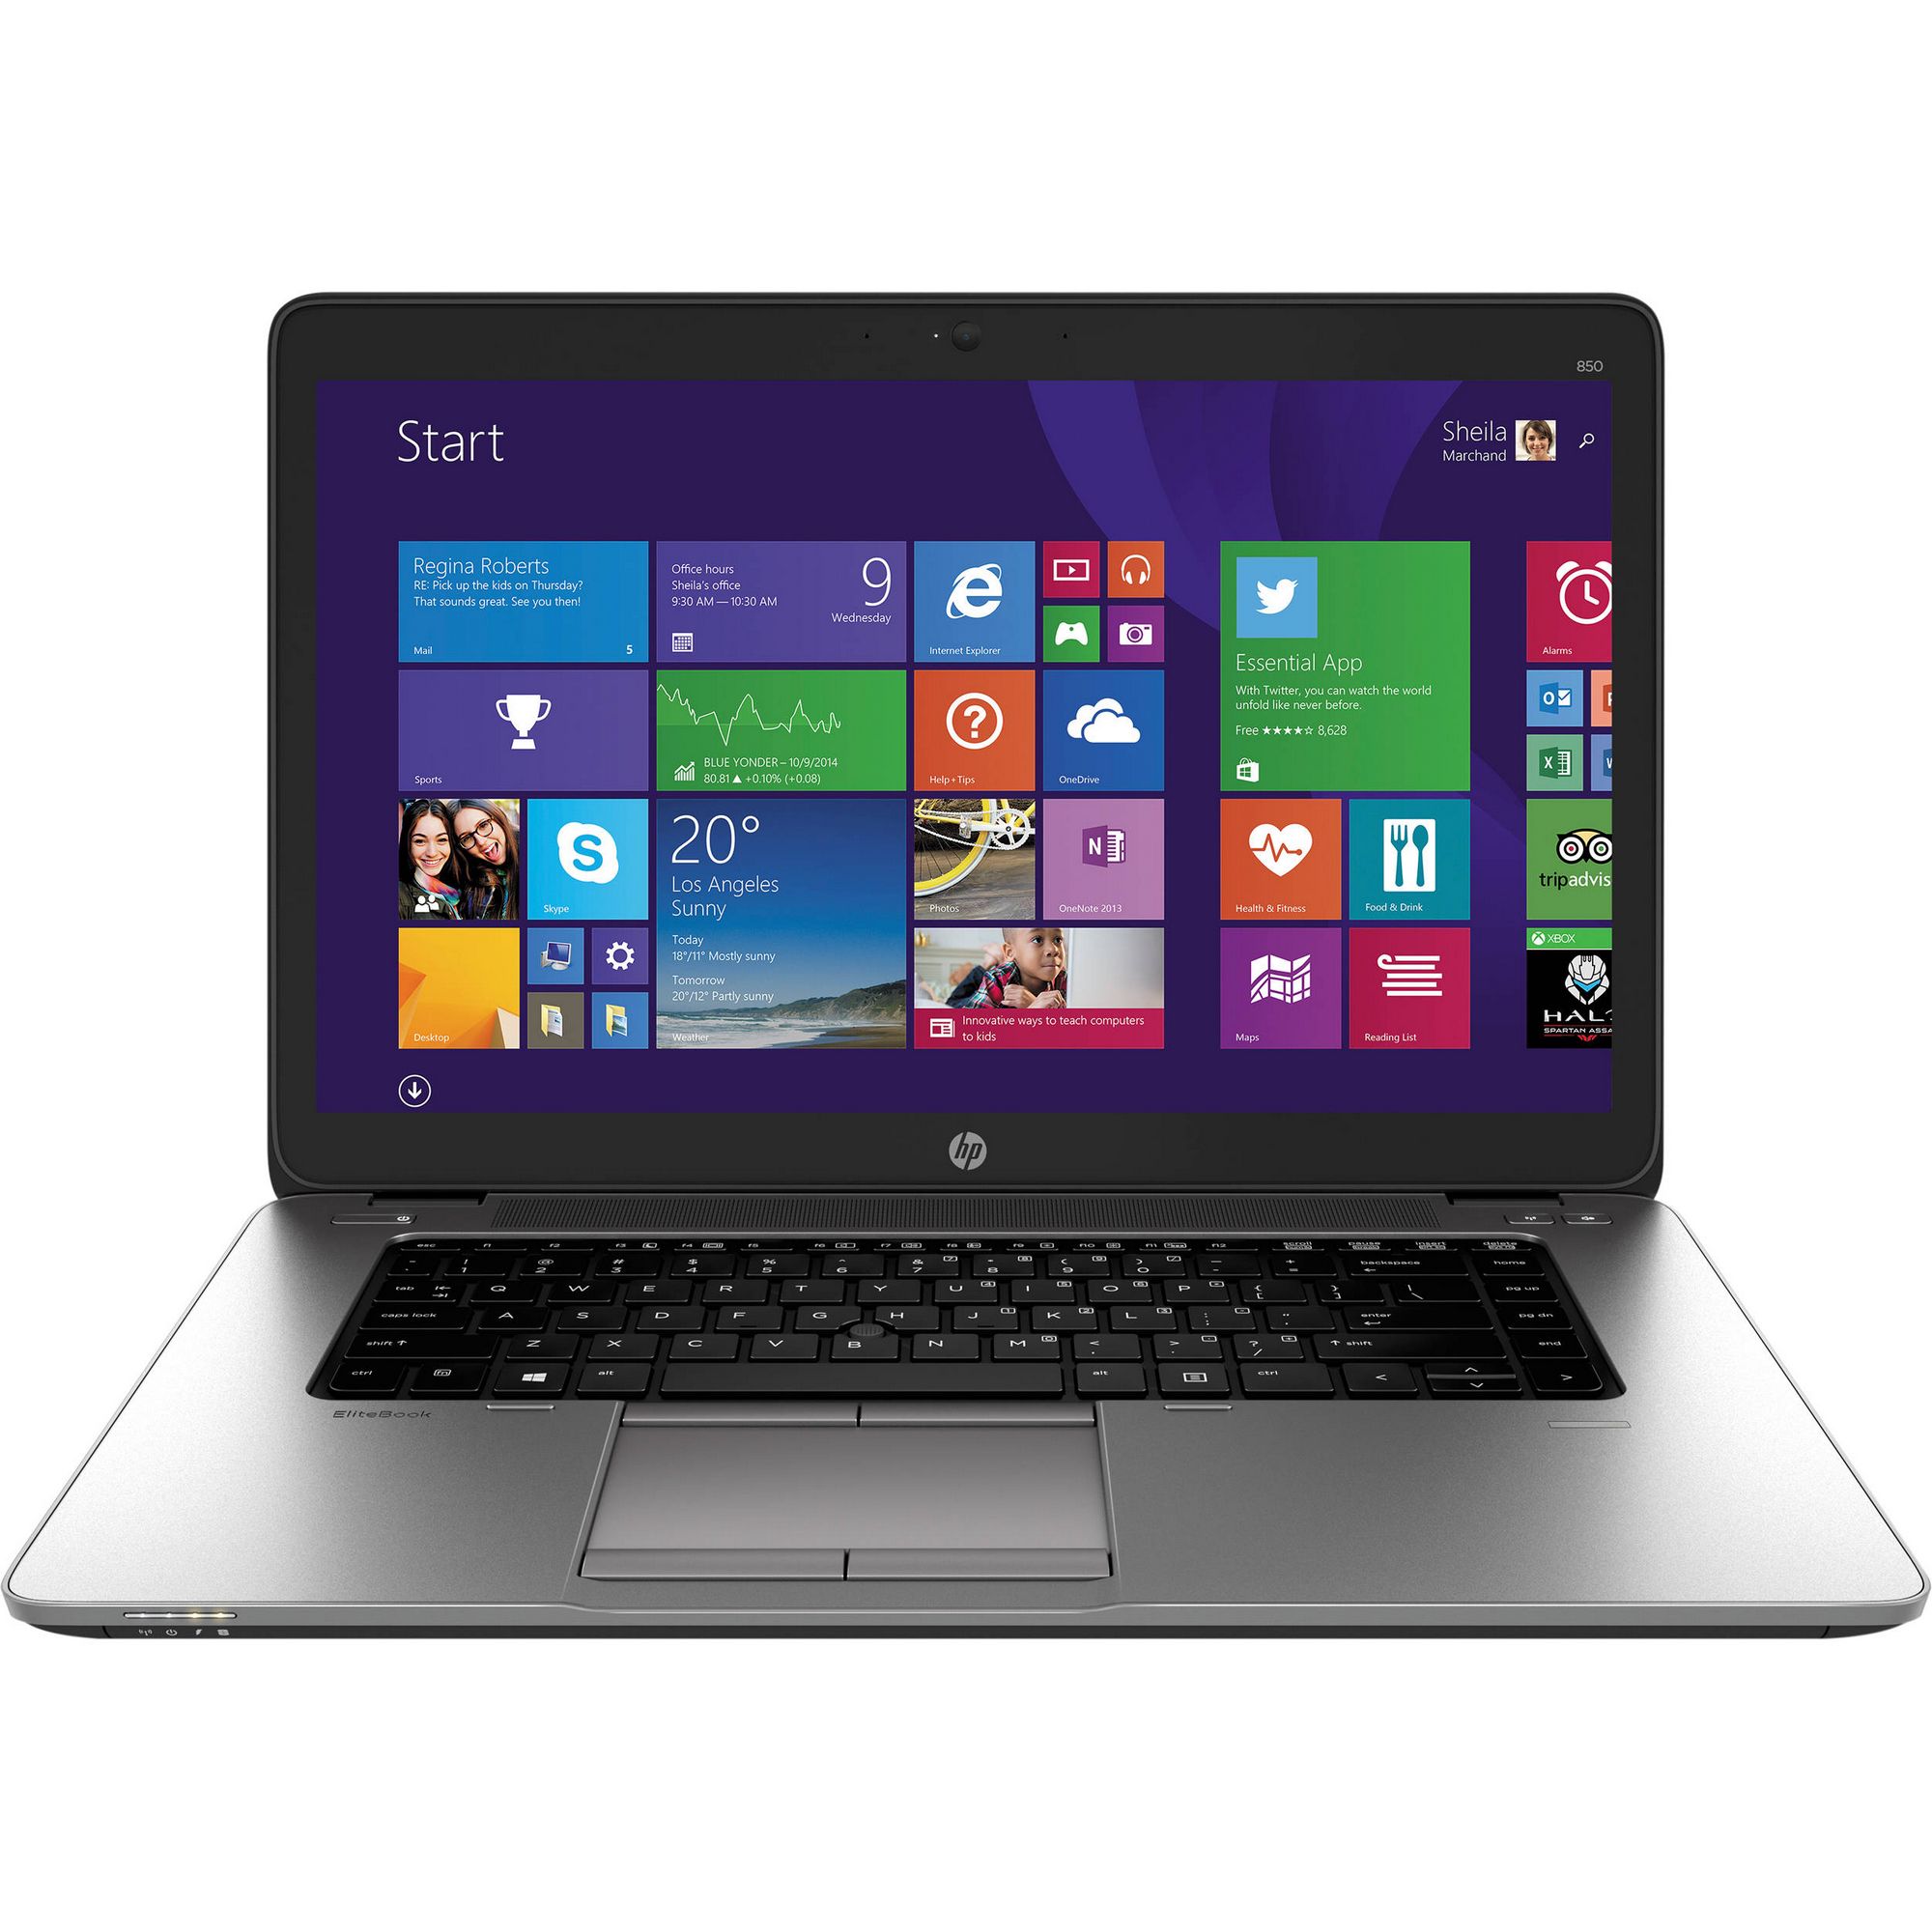  Laptop HP EliteBook 850 G2, Intel Core i5-5200U, 8GB DDR3, SSD 256GB, Intel HD Graphics, Windows 8.1 Pro 